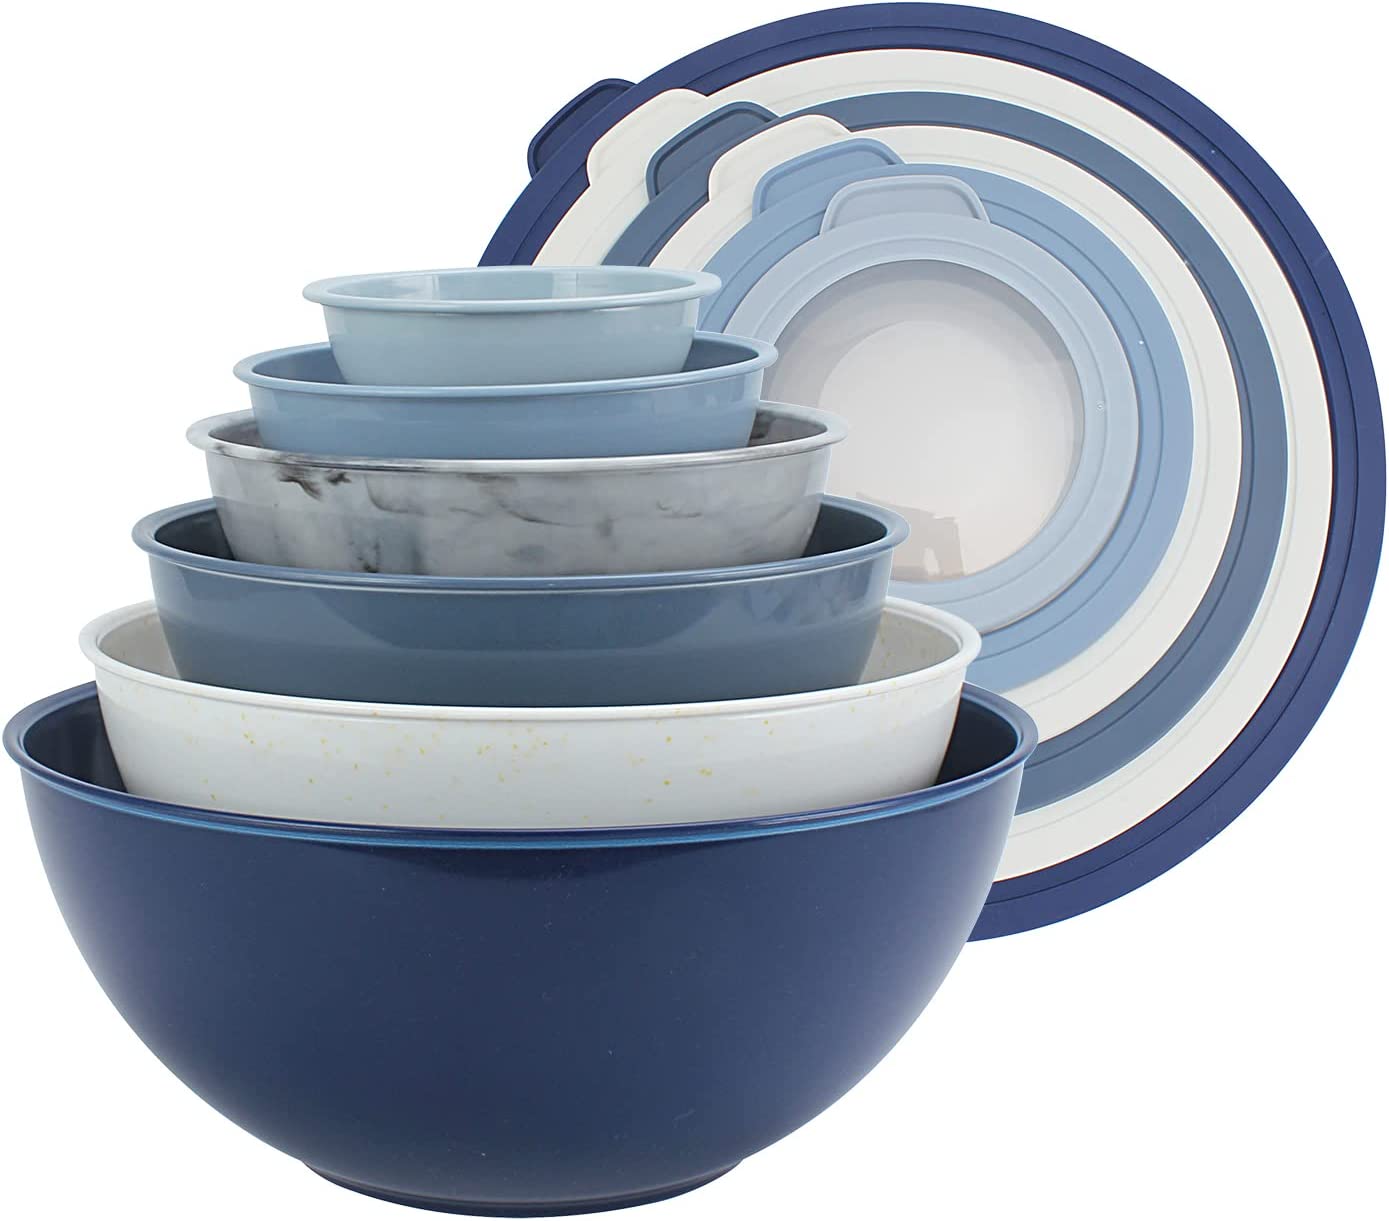 12 Piece Plastic Nesting Bowls, Set Includes 6 Prep Bowls and 6 Lids